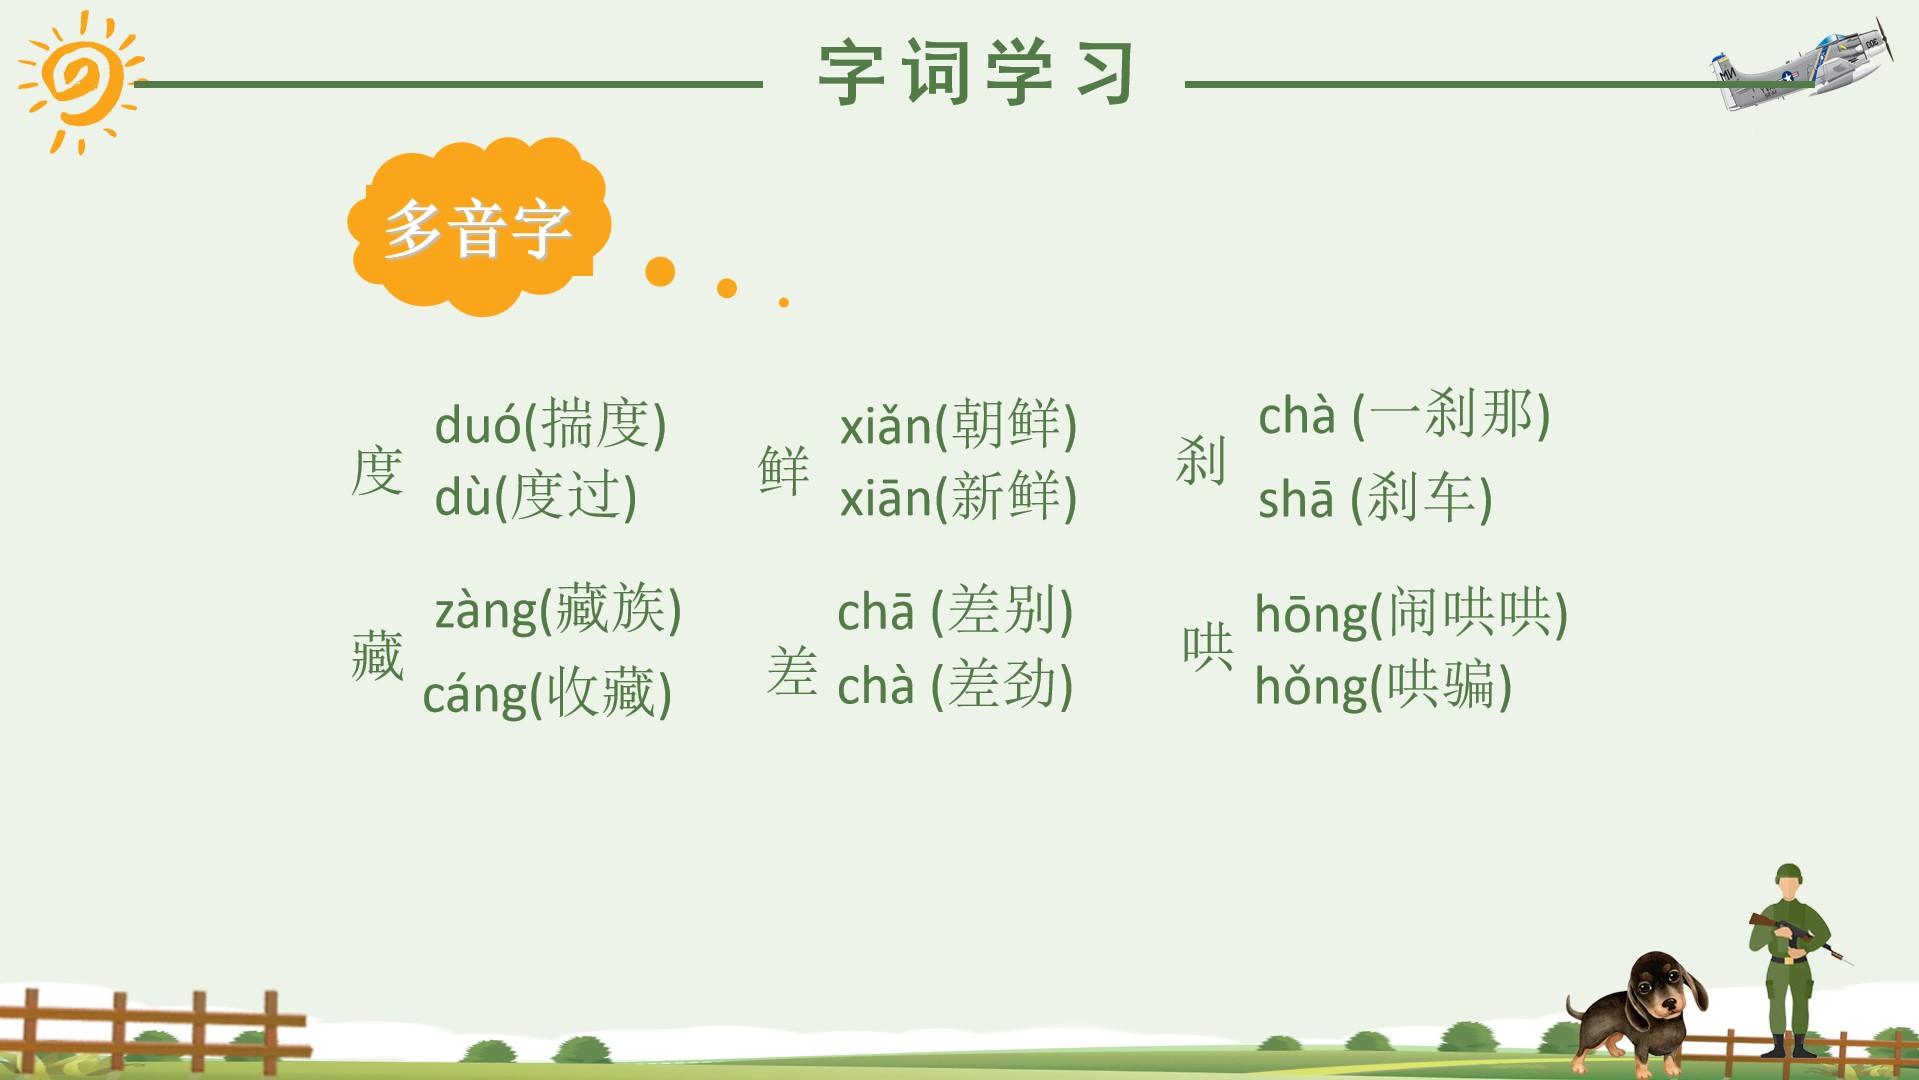 教育教学橙色绿色白色卡通xi ch 朝鲜 藏族 刹车云素材PPT模板1672577506209